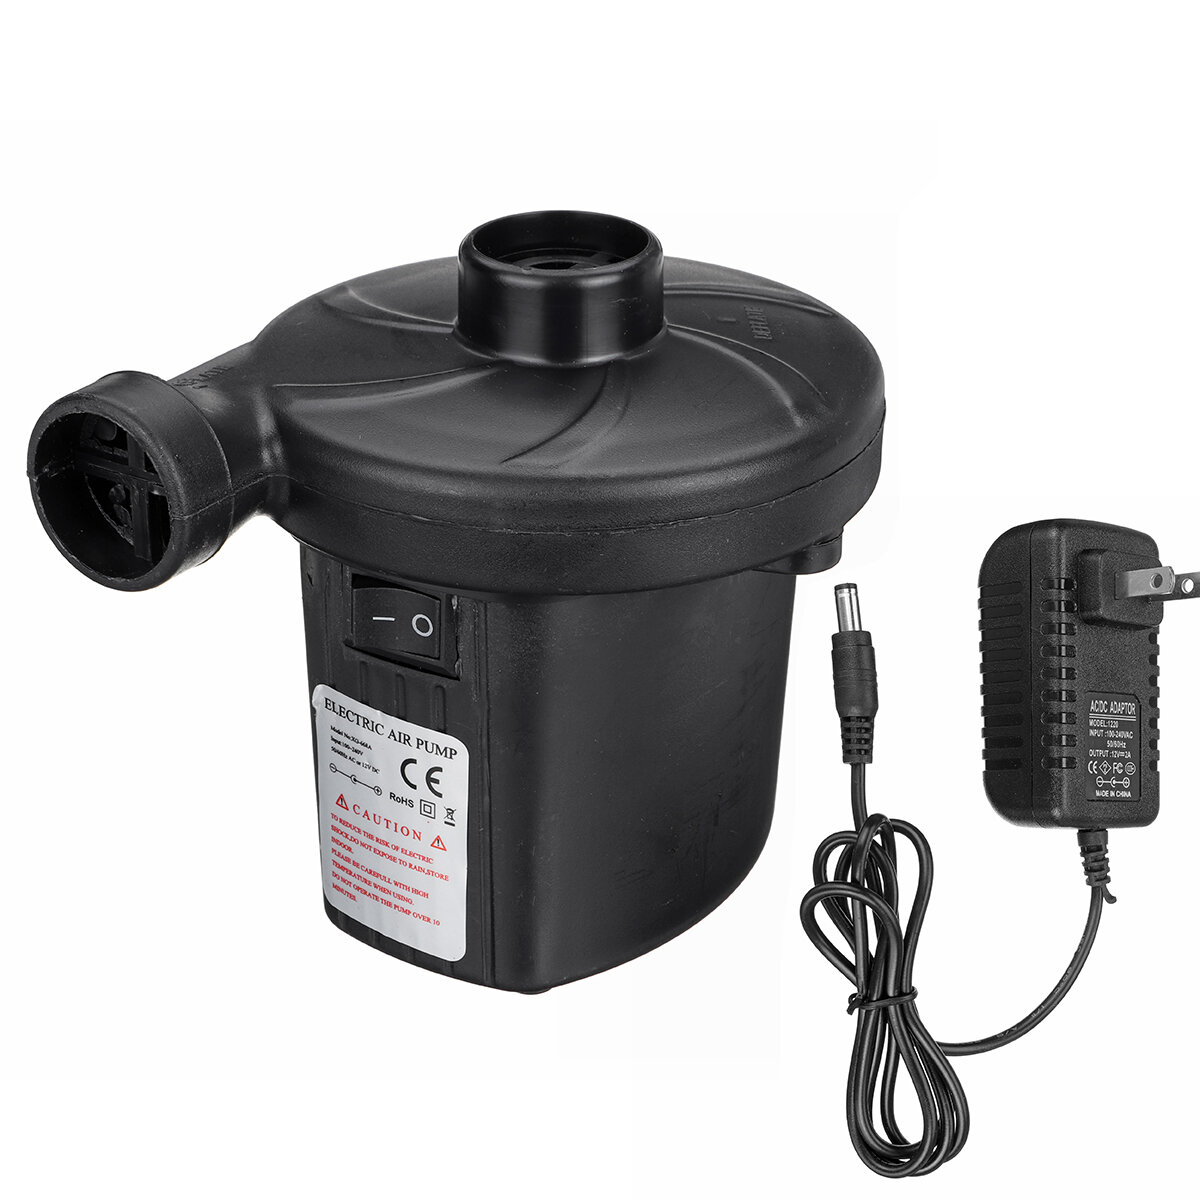 

110-240V 10000pa Max Electric Air Pump Quick Air Filling Pump Portable Inflator Deflator Pump With 3 Detachable Nozzles